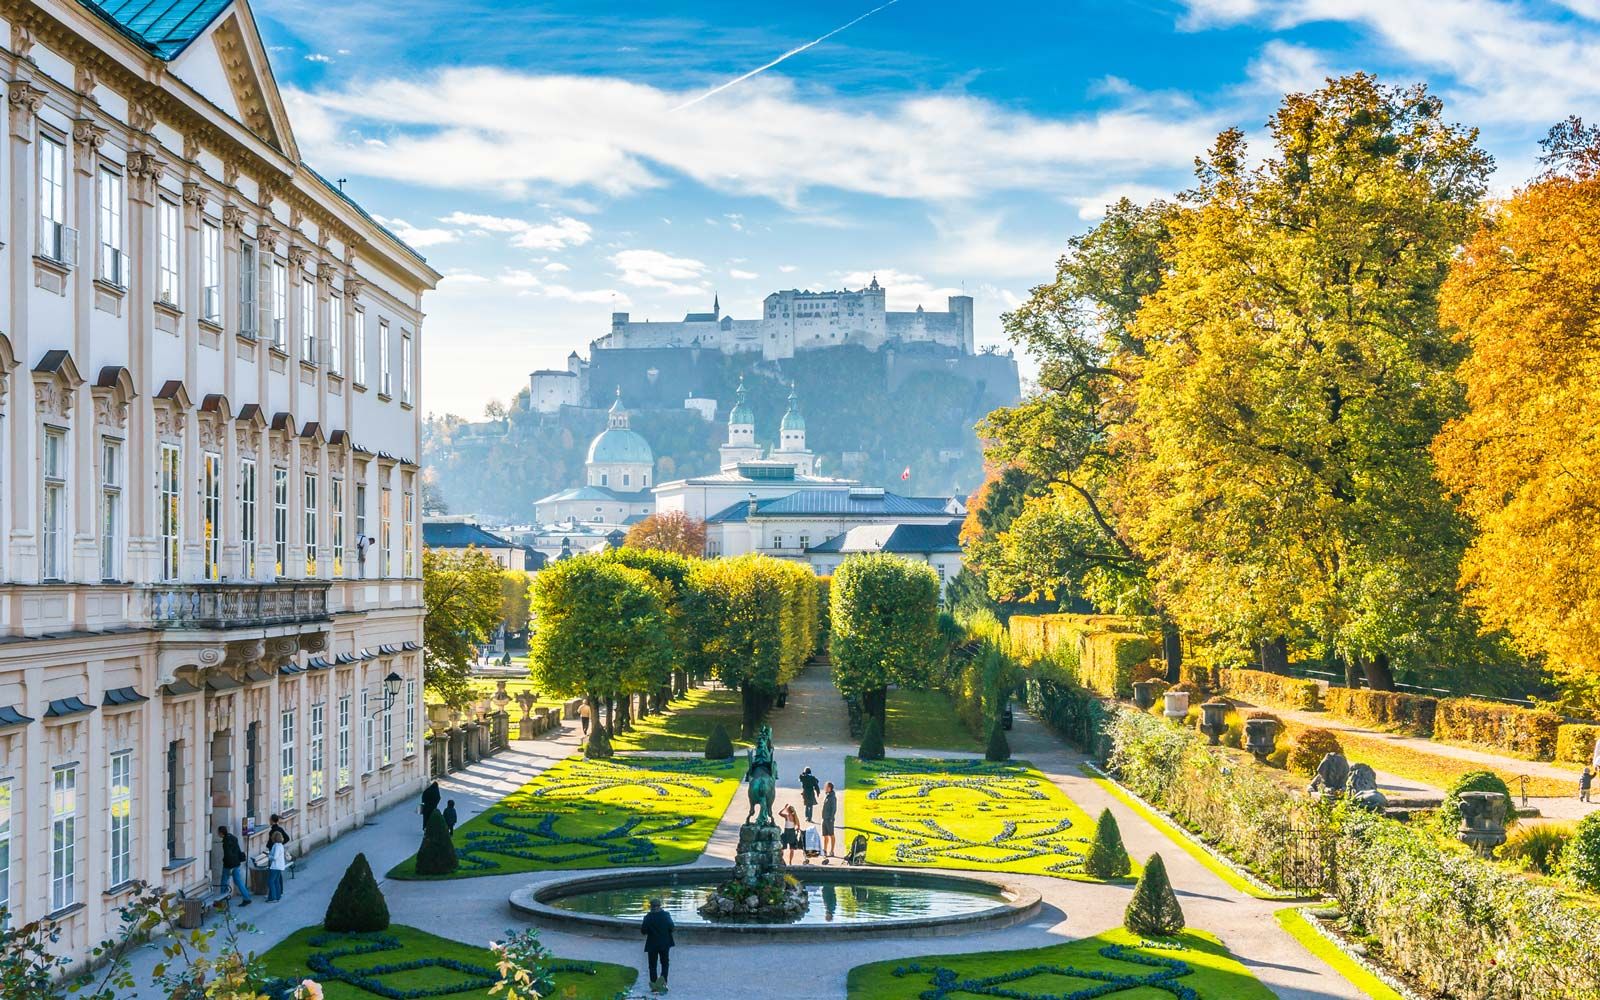 Berühmter Mirabellgarten mit historischer Festung in Salzburg, Österreich